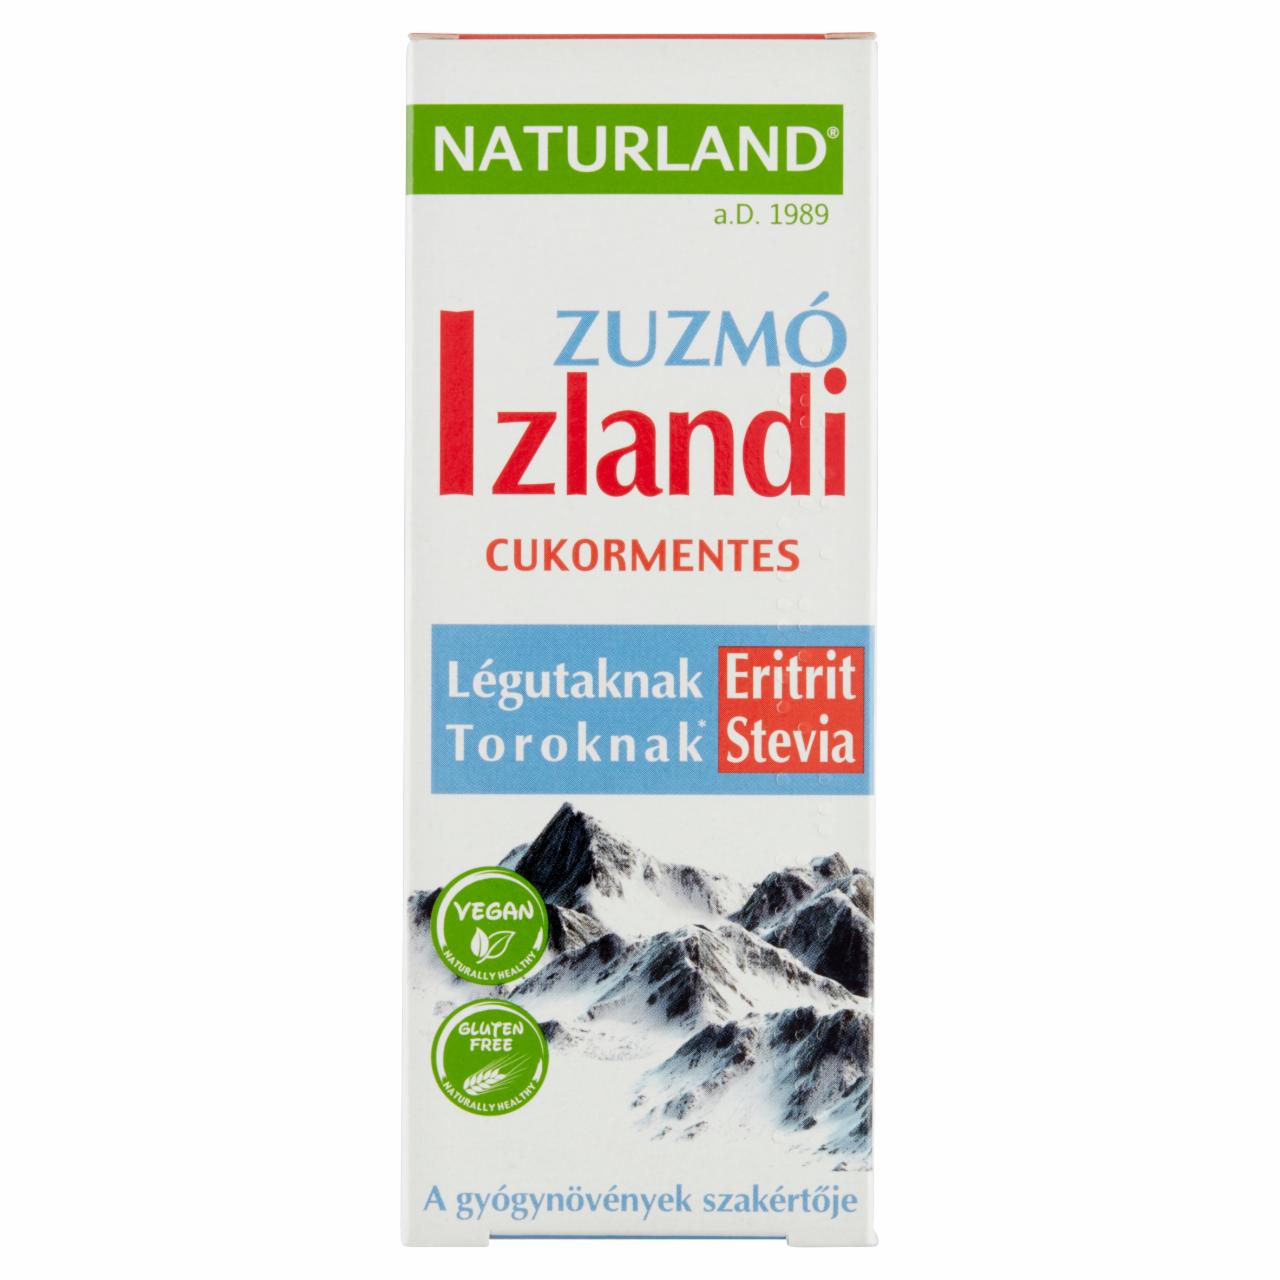 Képek - Naturland izlandi zuzmó kivonatot tartalmazó folyékony étrend-kiegészítő édesítőszerekkel 150 ml